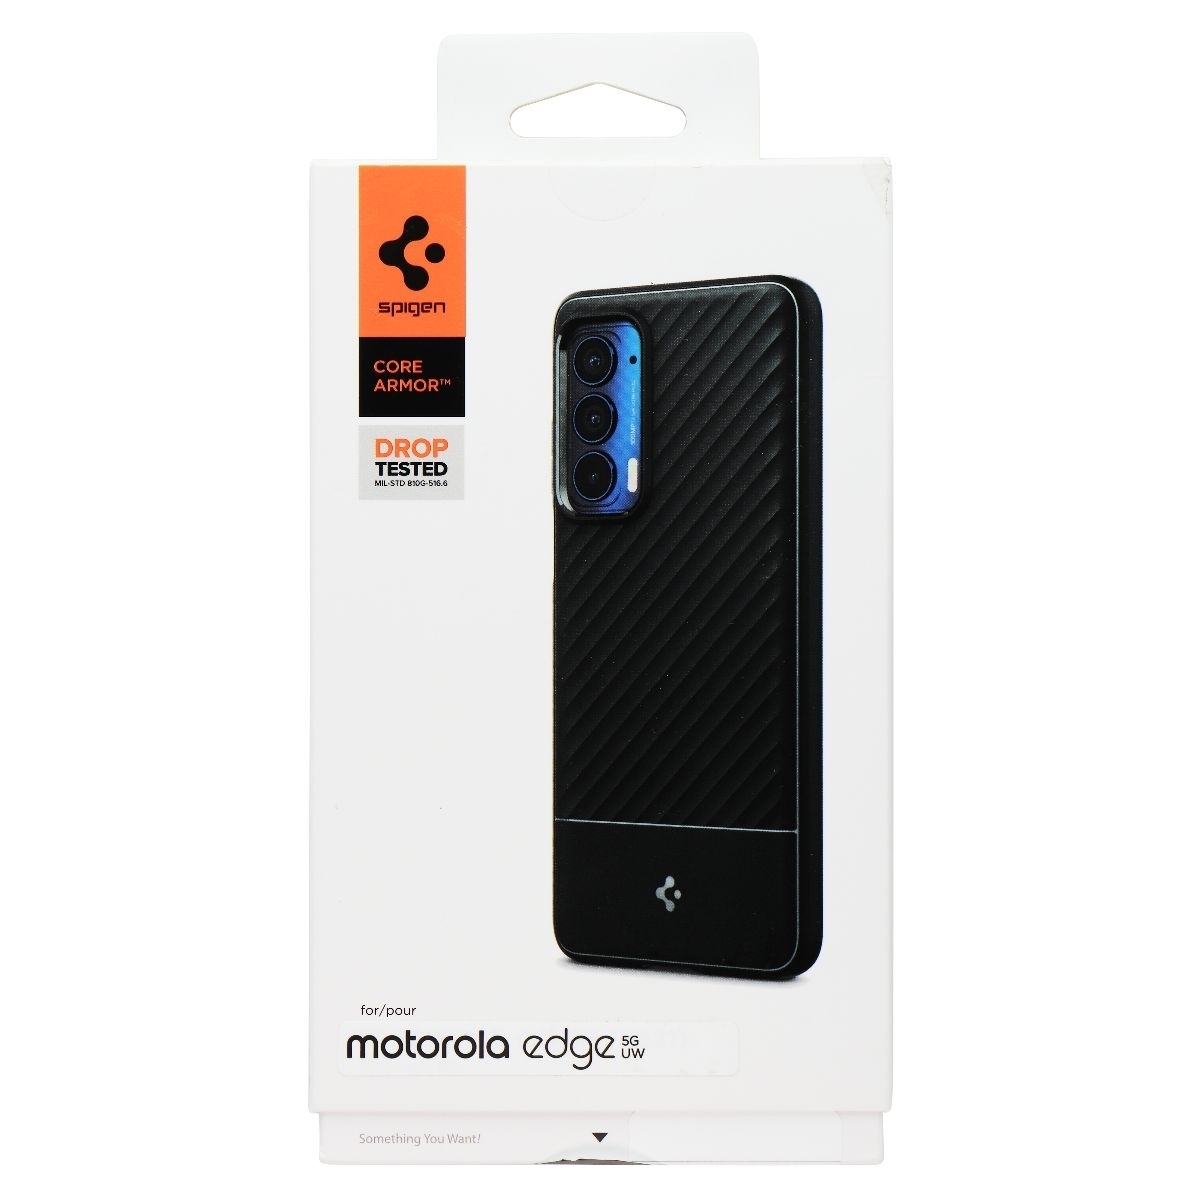 Spigen Core Armor Series Case For Motorola Edge 5G UW - Black (Refurbished)